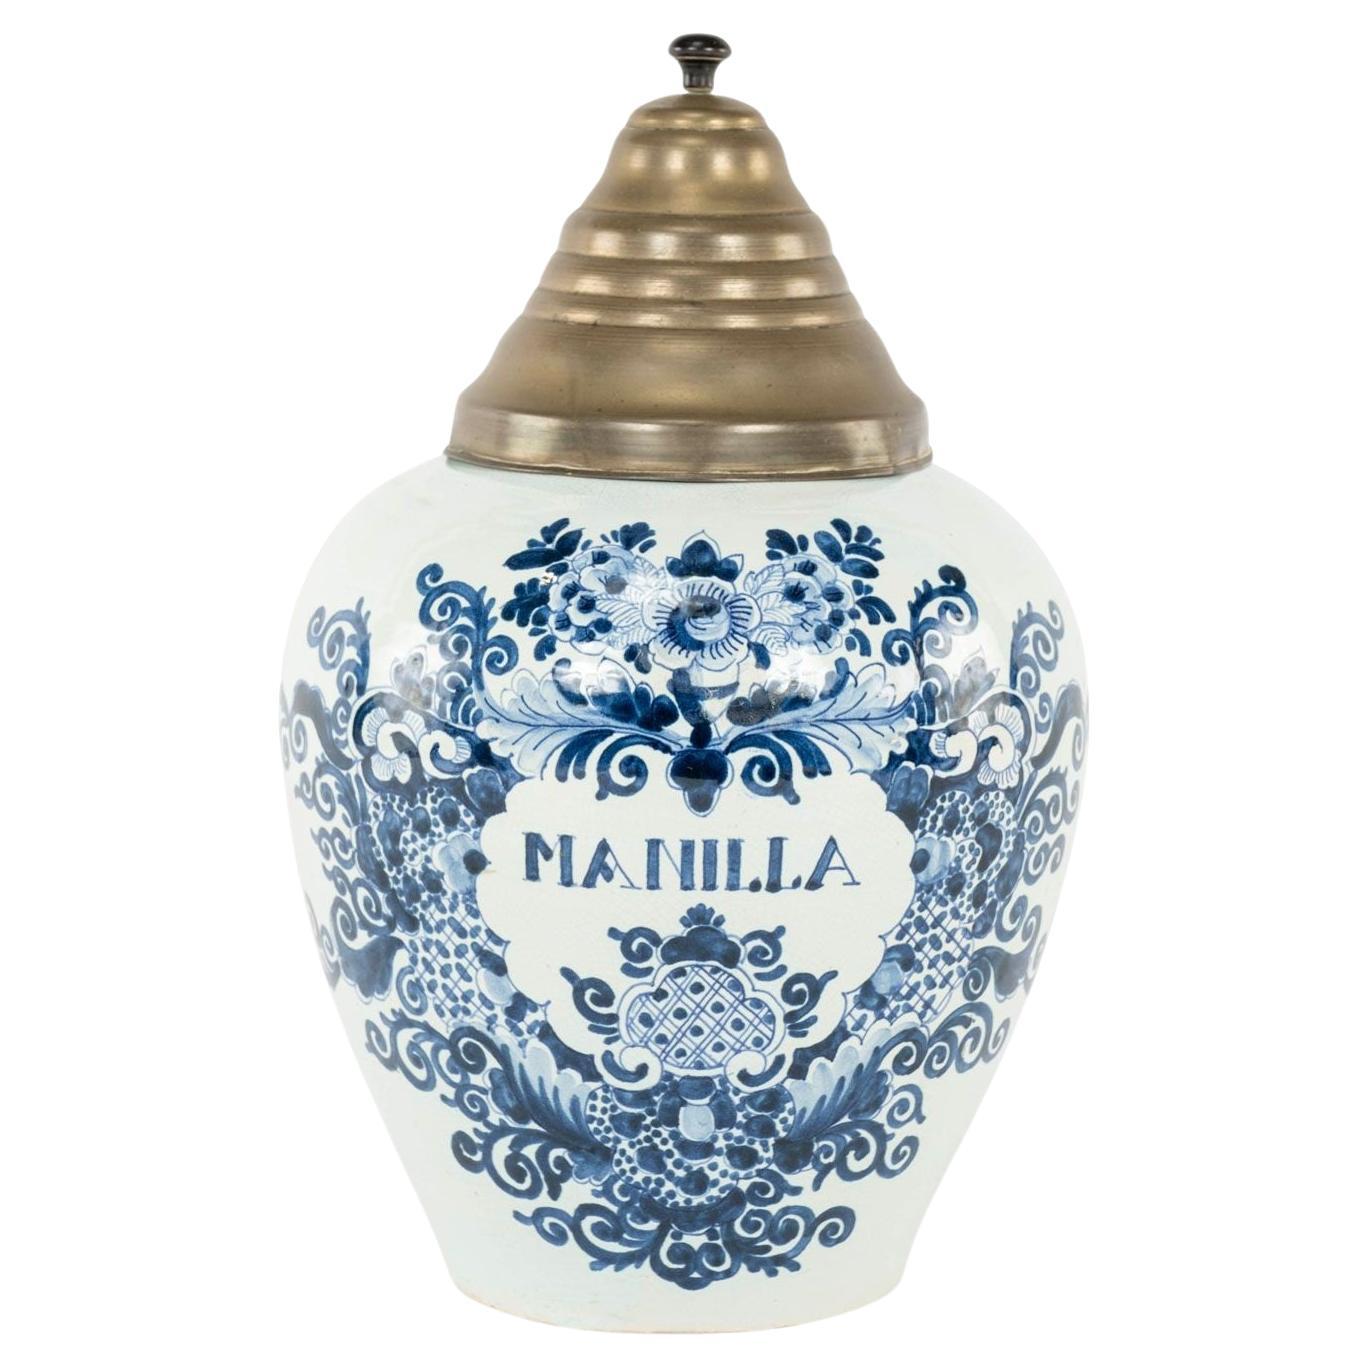 Delft Blau und Weiß "Manilla" Tabak JAR